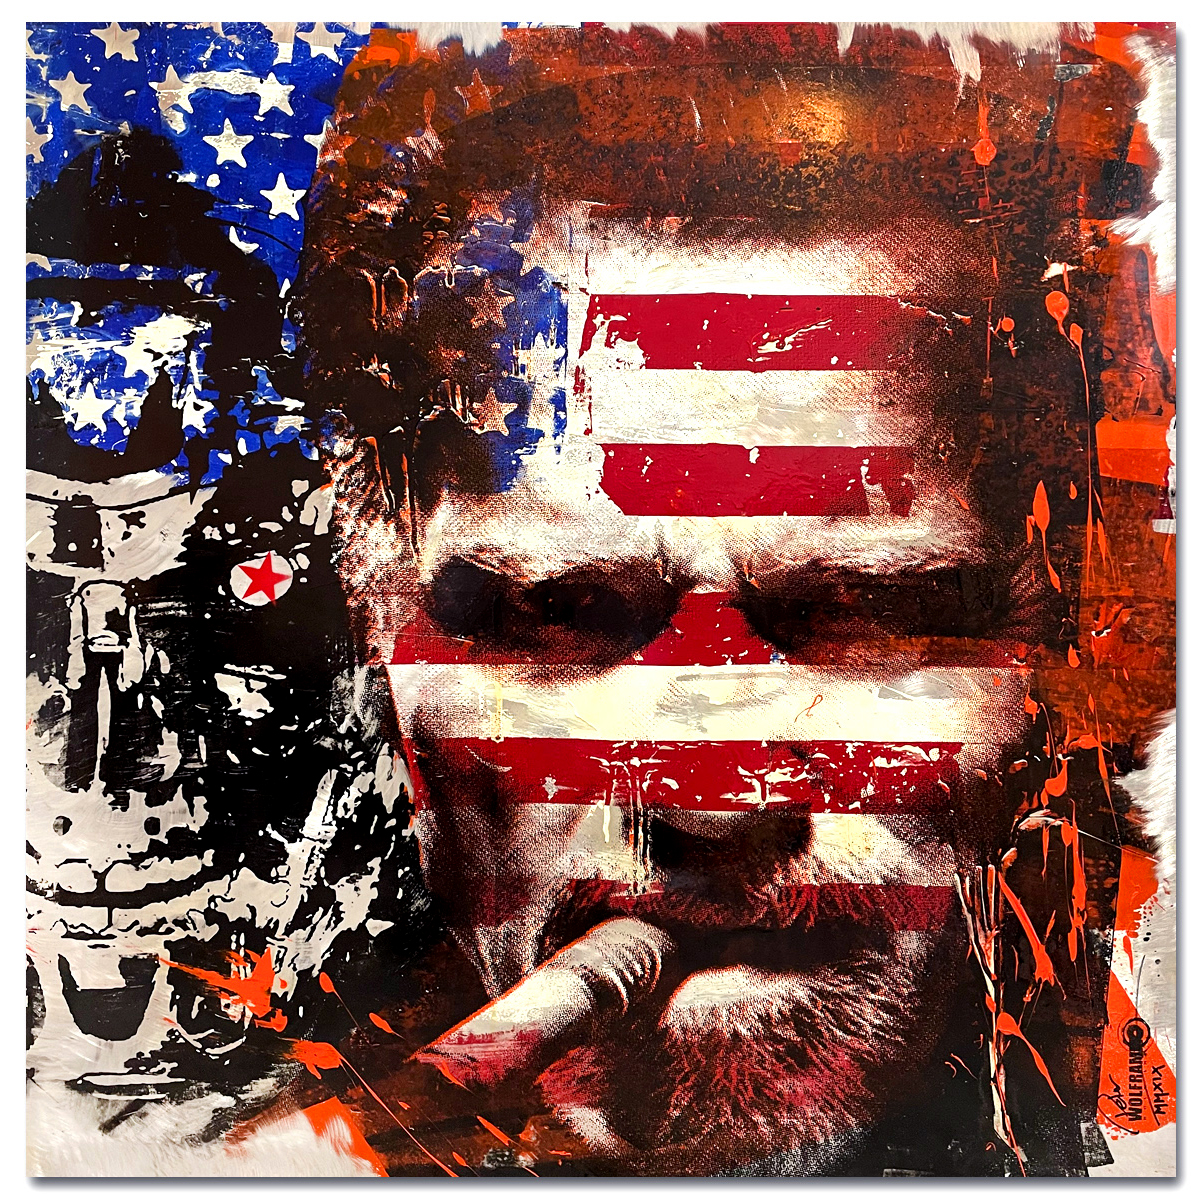 Peter Wolframm "Schwarzenegger" Pop Art